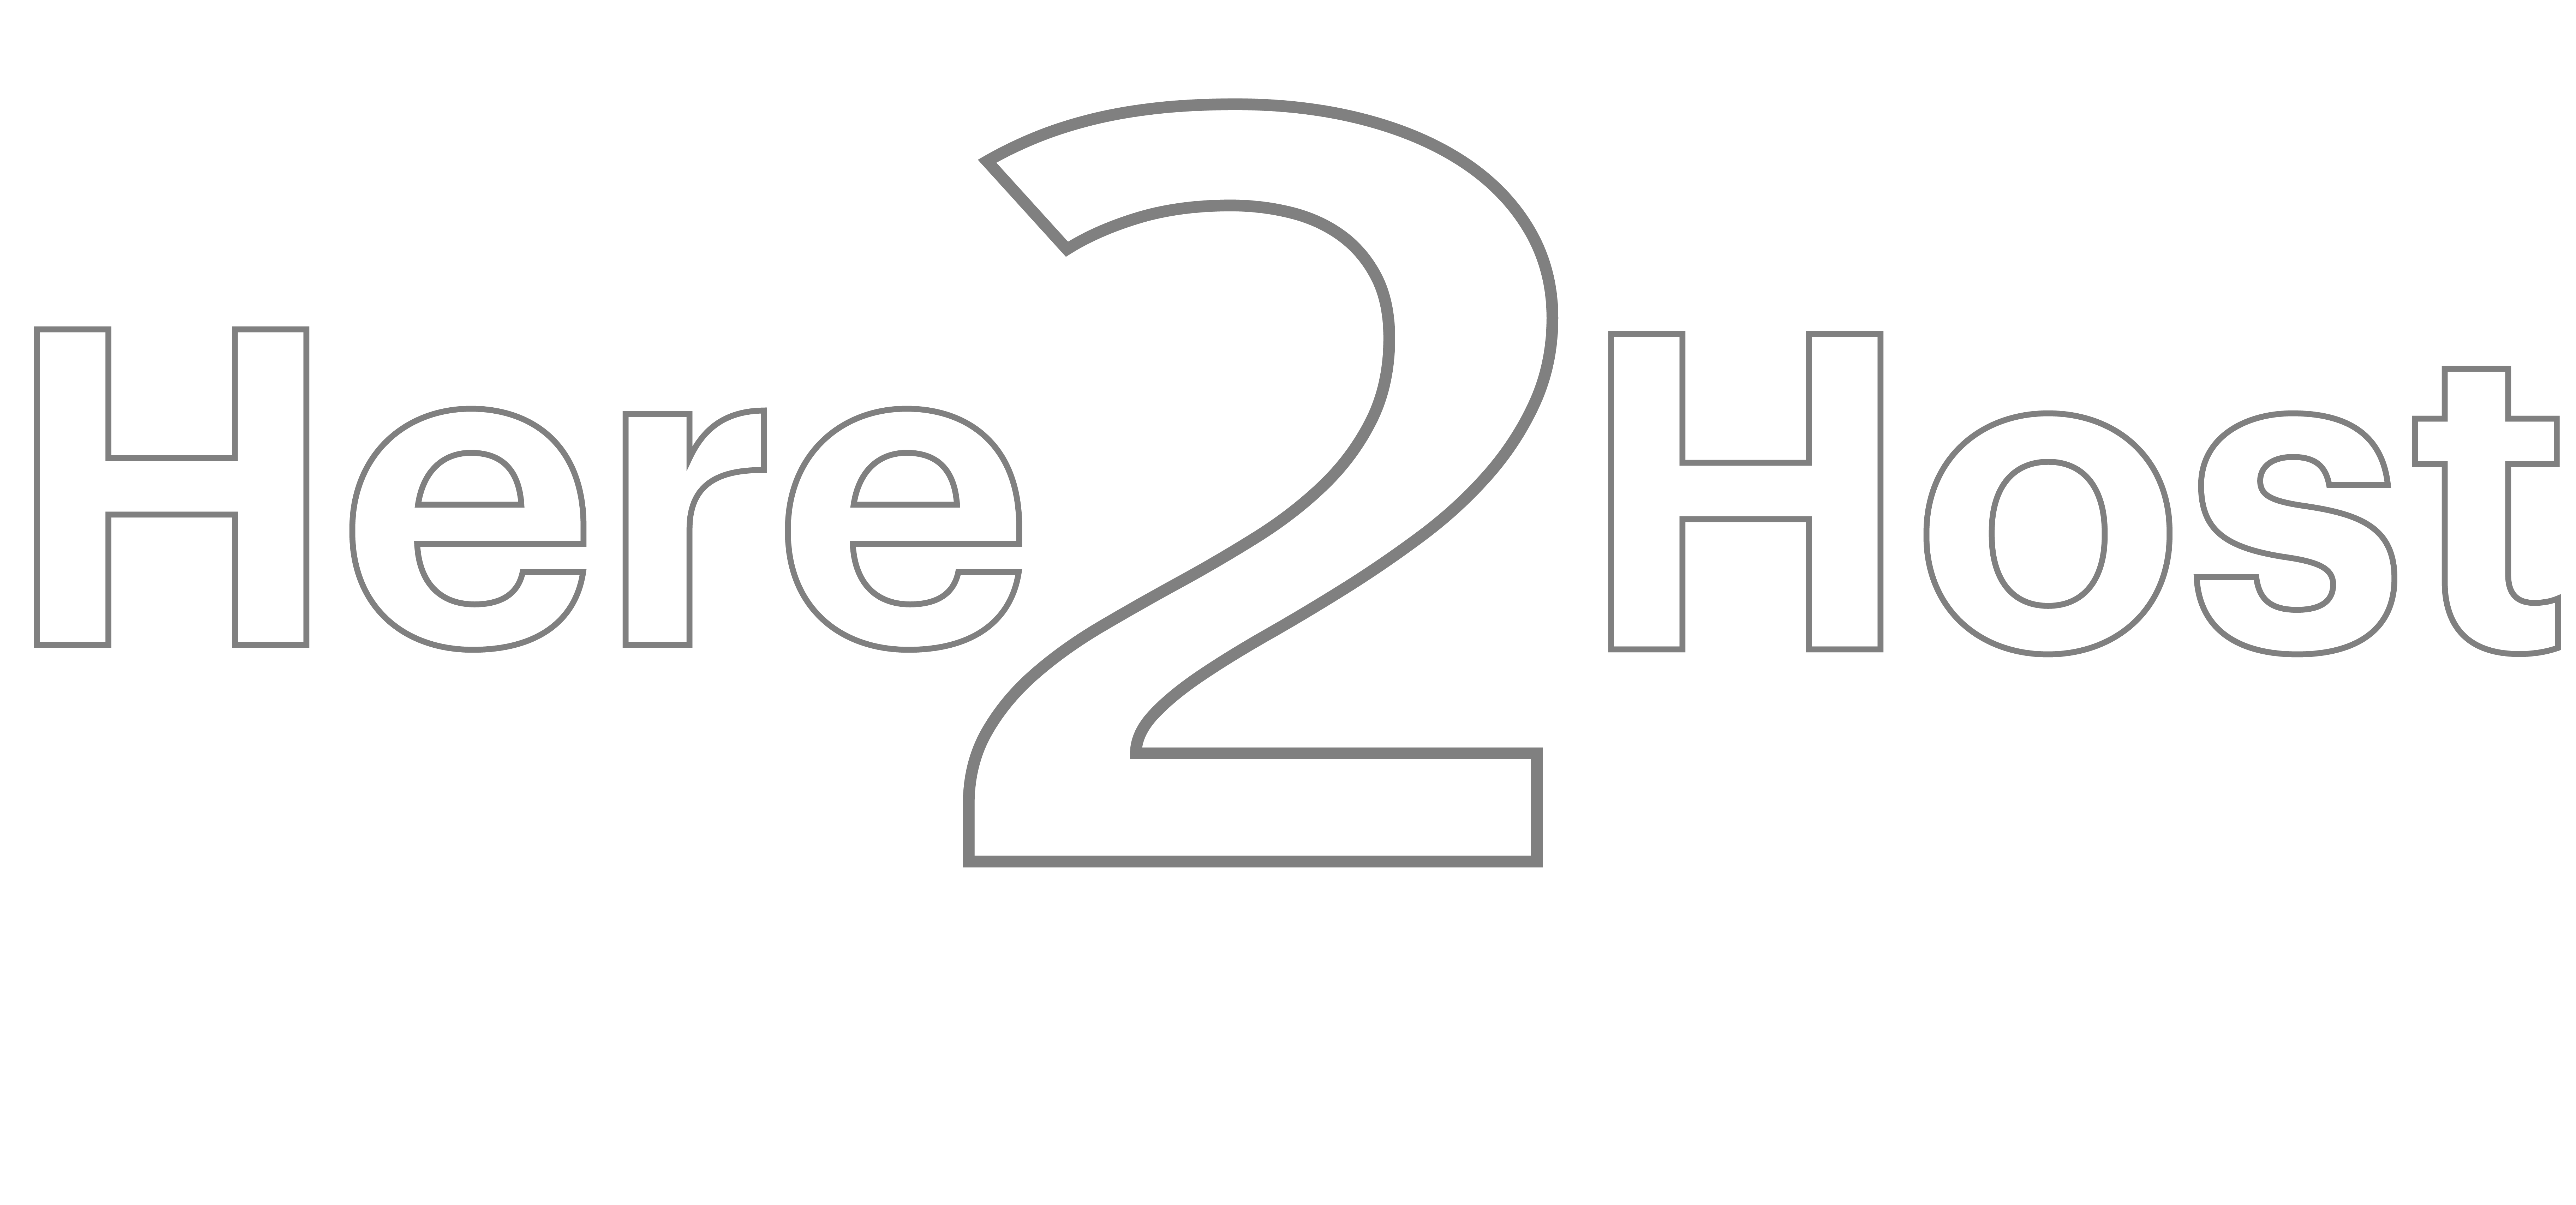 h2h logo 2021 full white